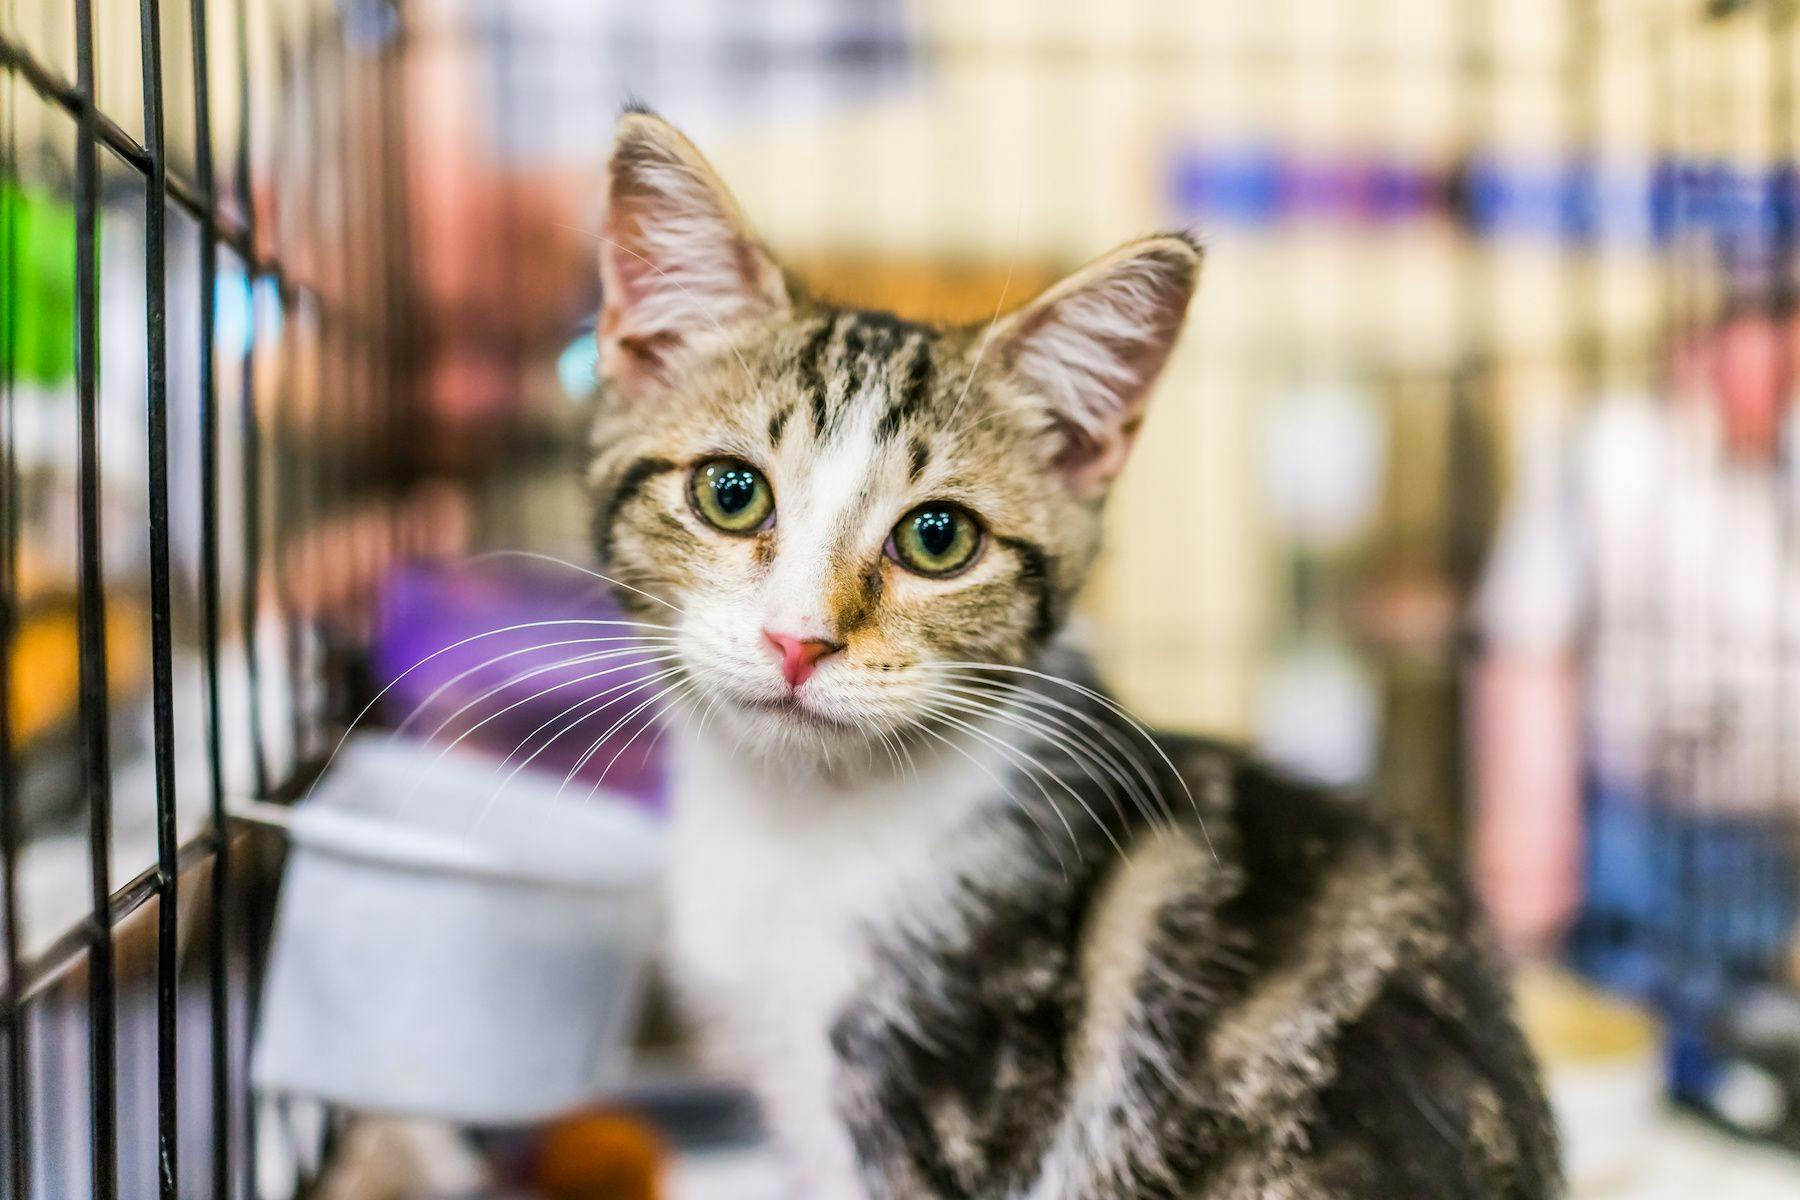 Kitten up for adoption